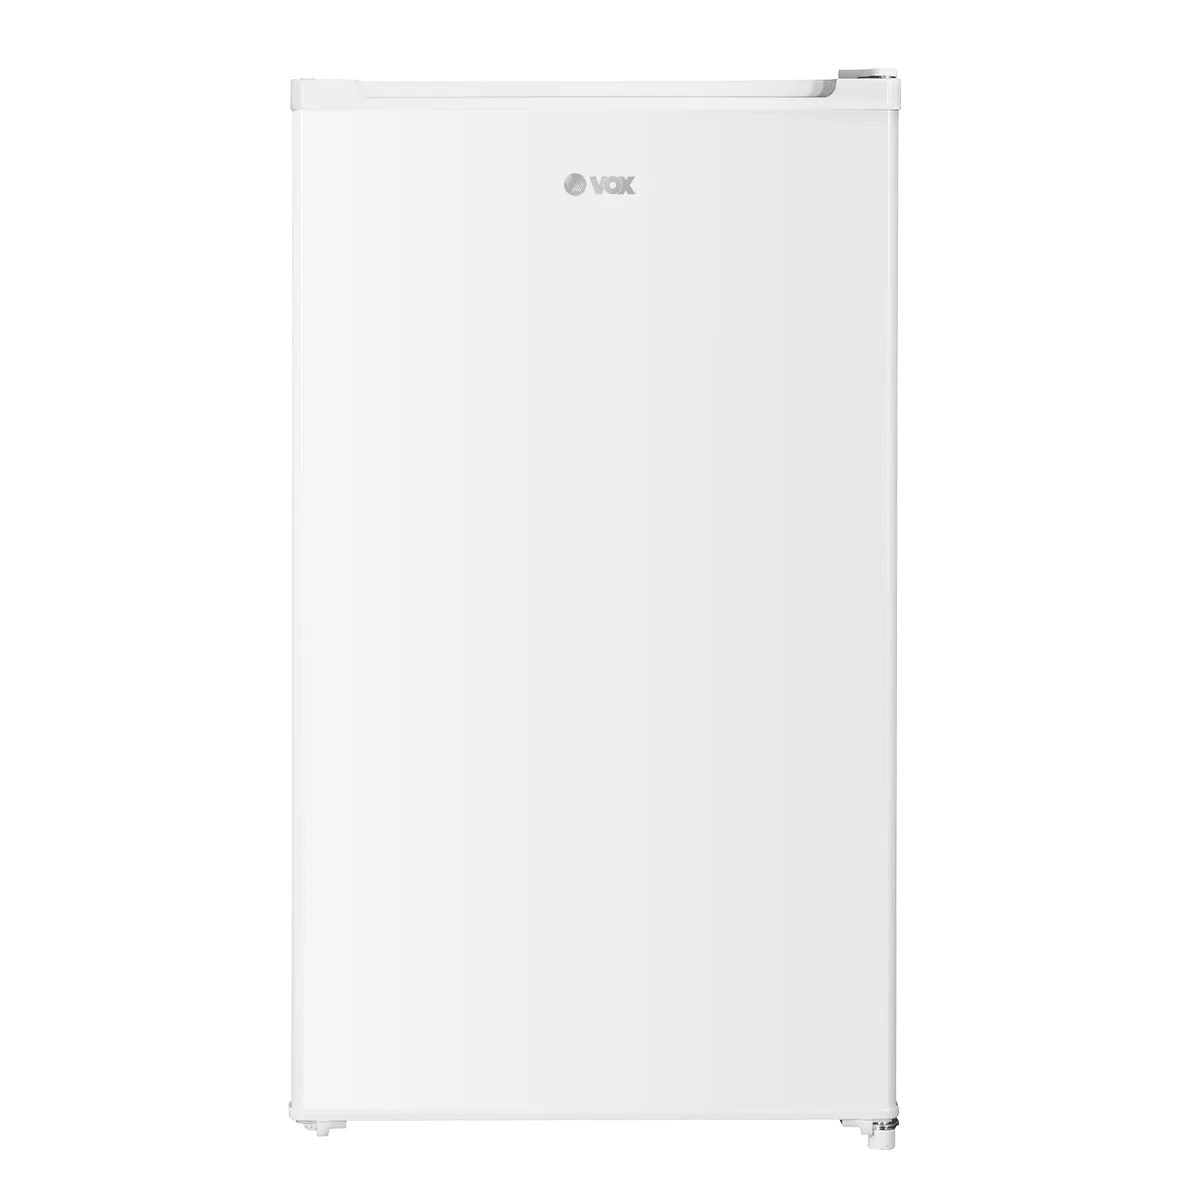 Refrigerator KS 1010 F 